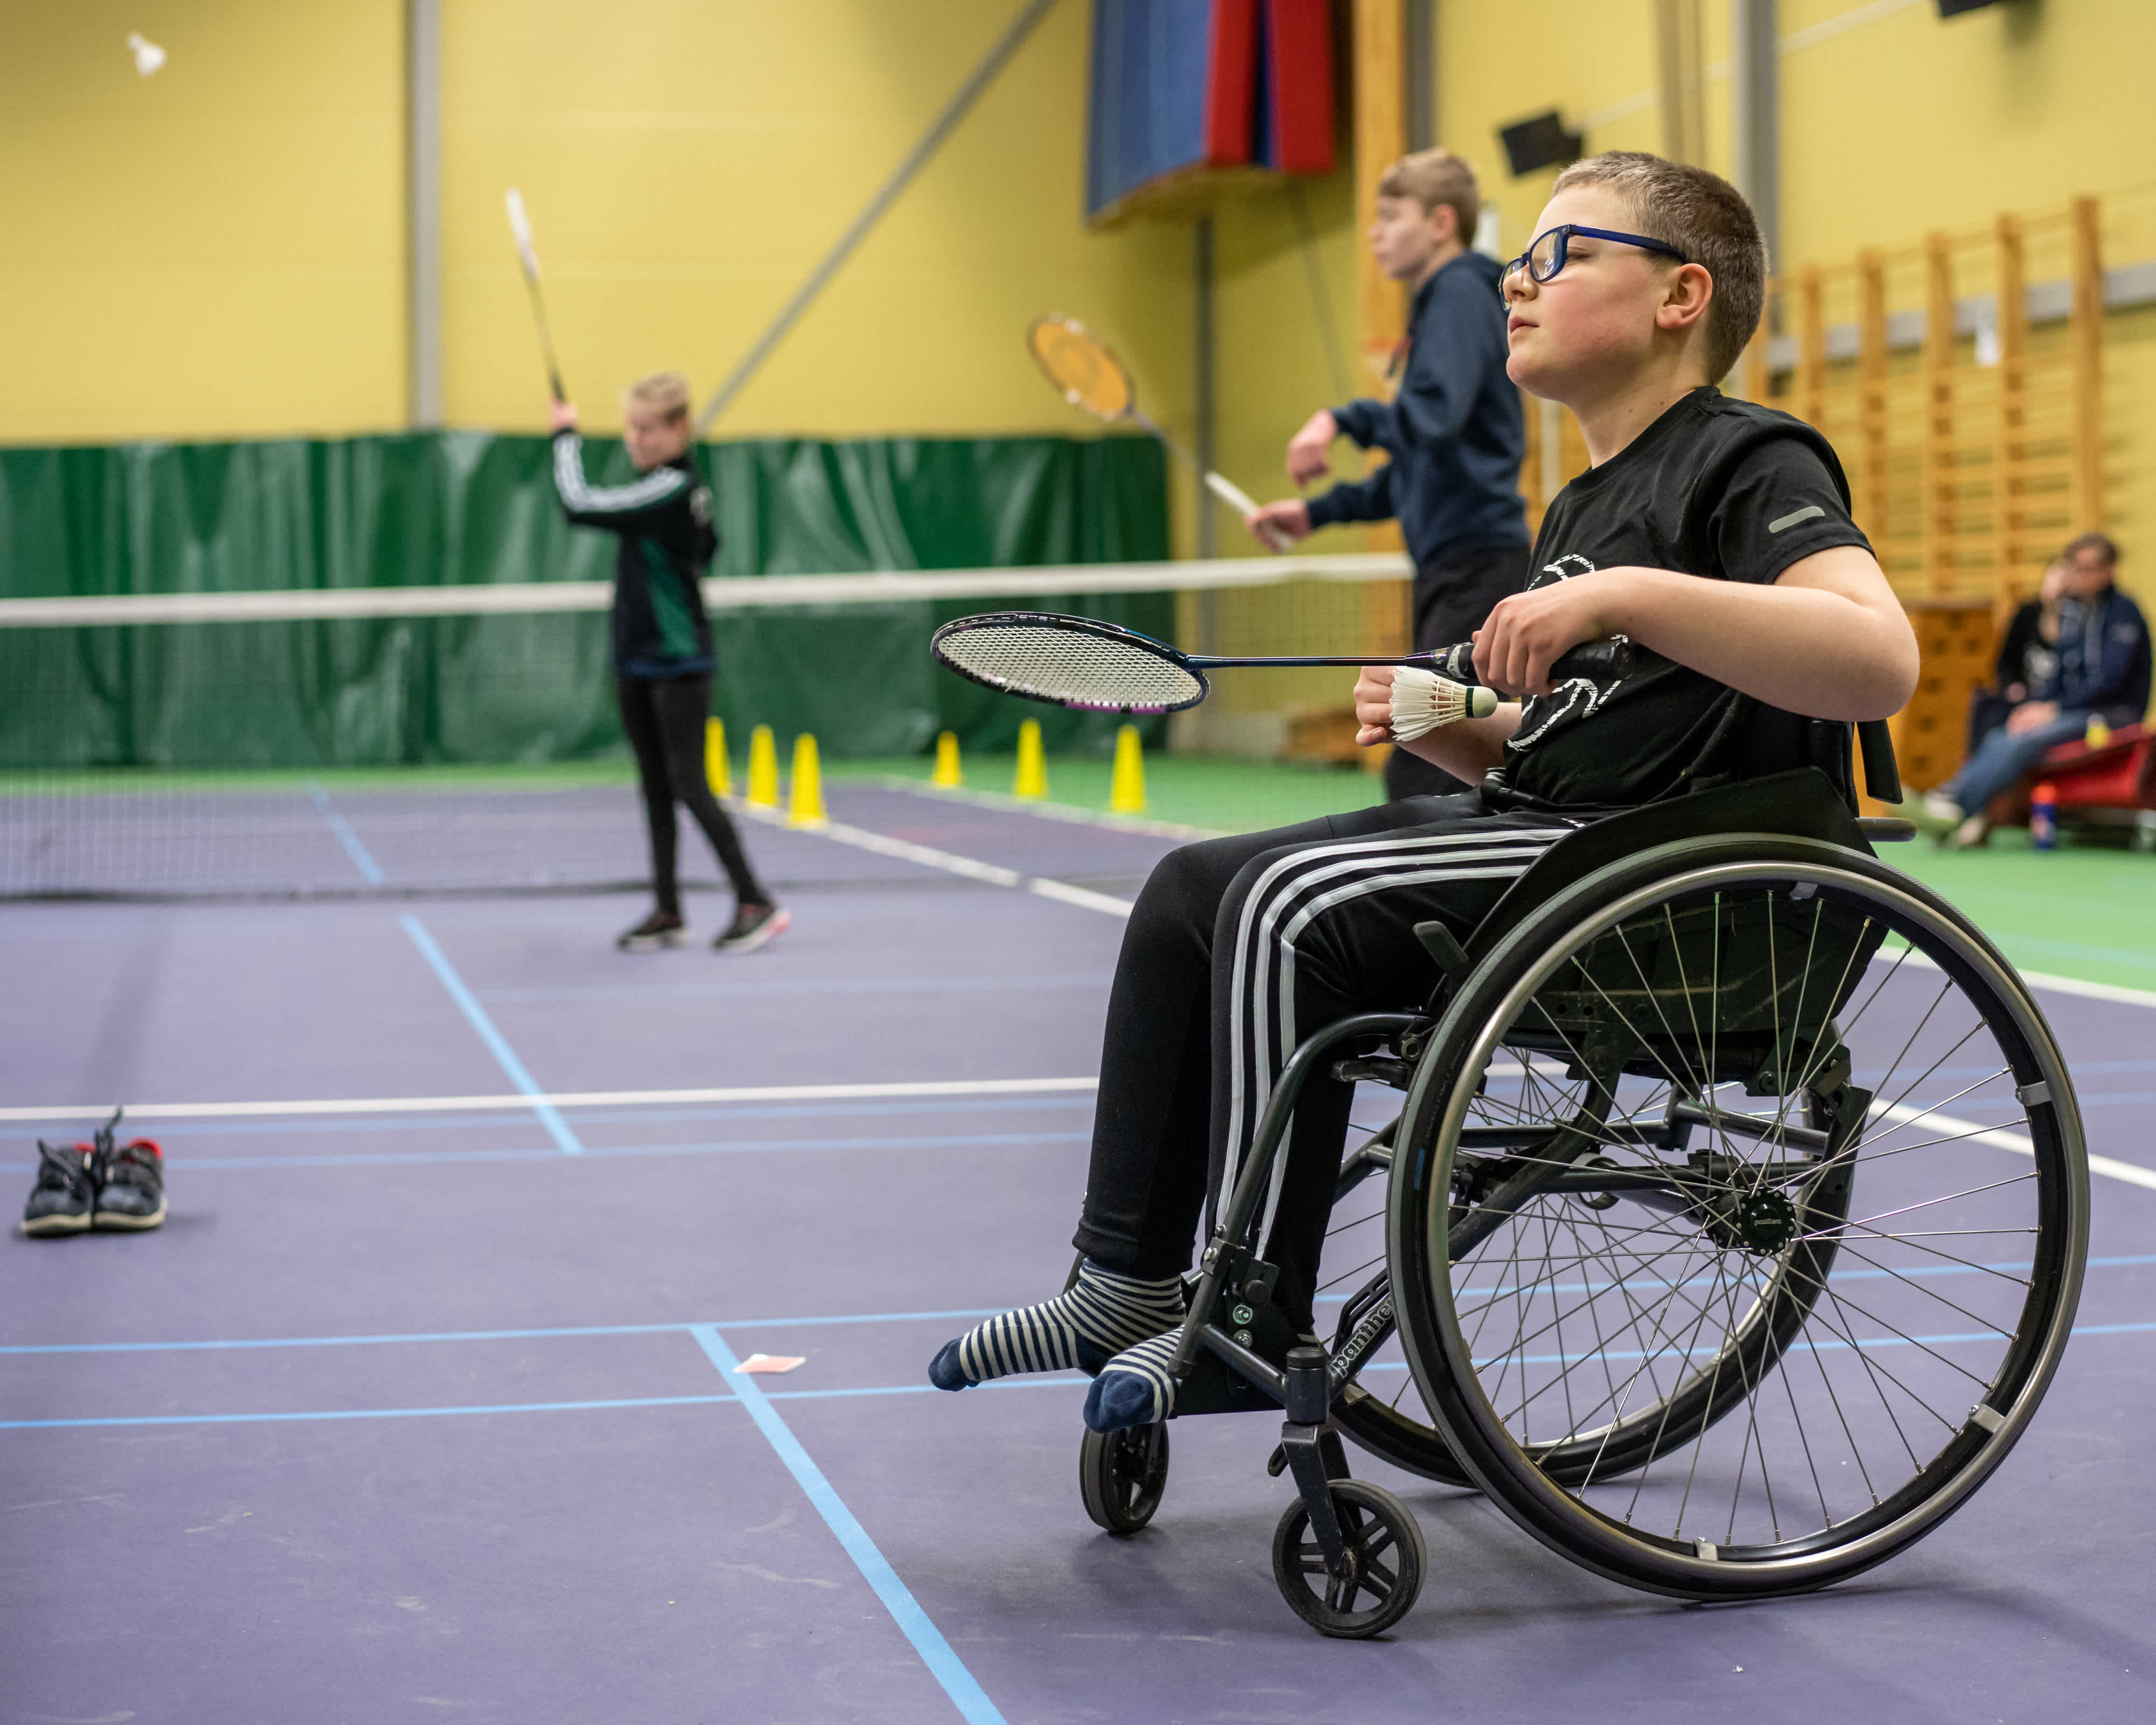 Pojke i rullstol gör sig redo att skjuta iväg badmintonfjädern. Flera badmintonspelare i bakgrunden.